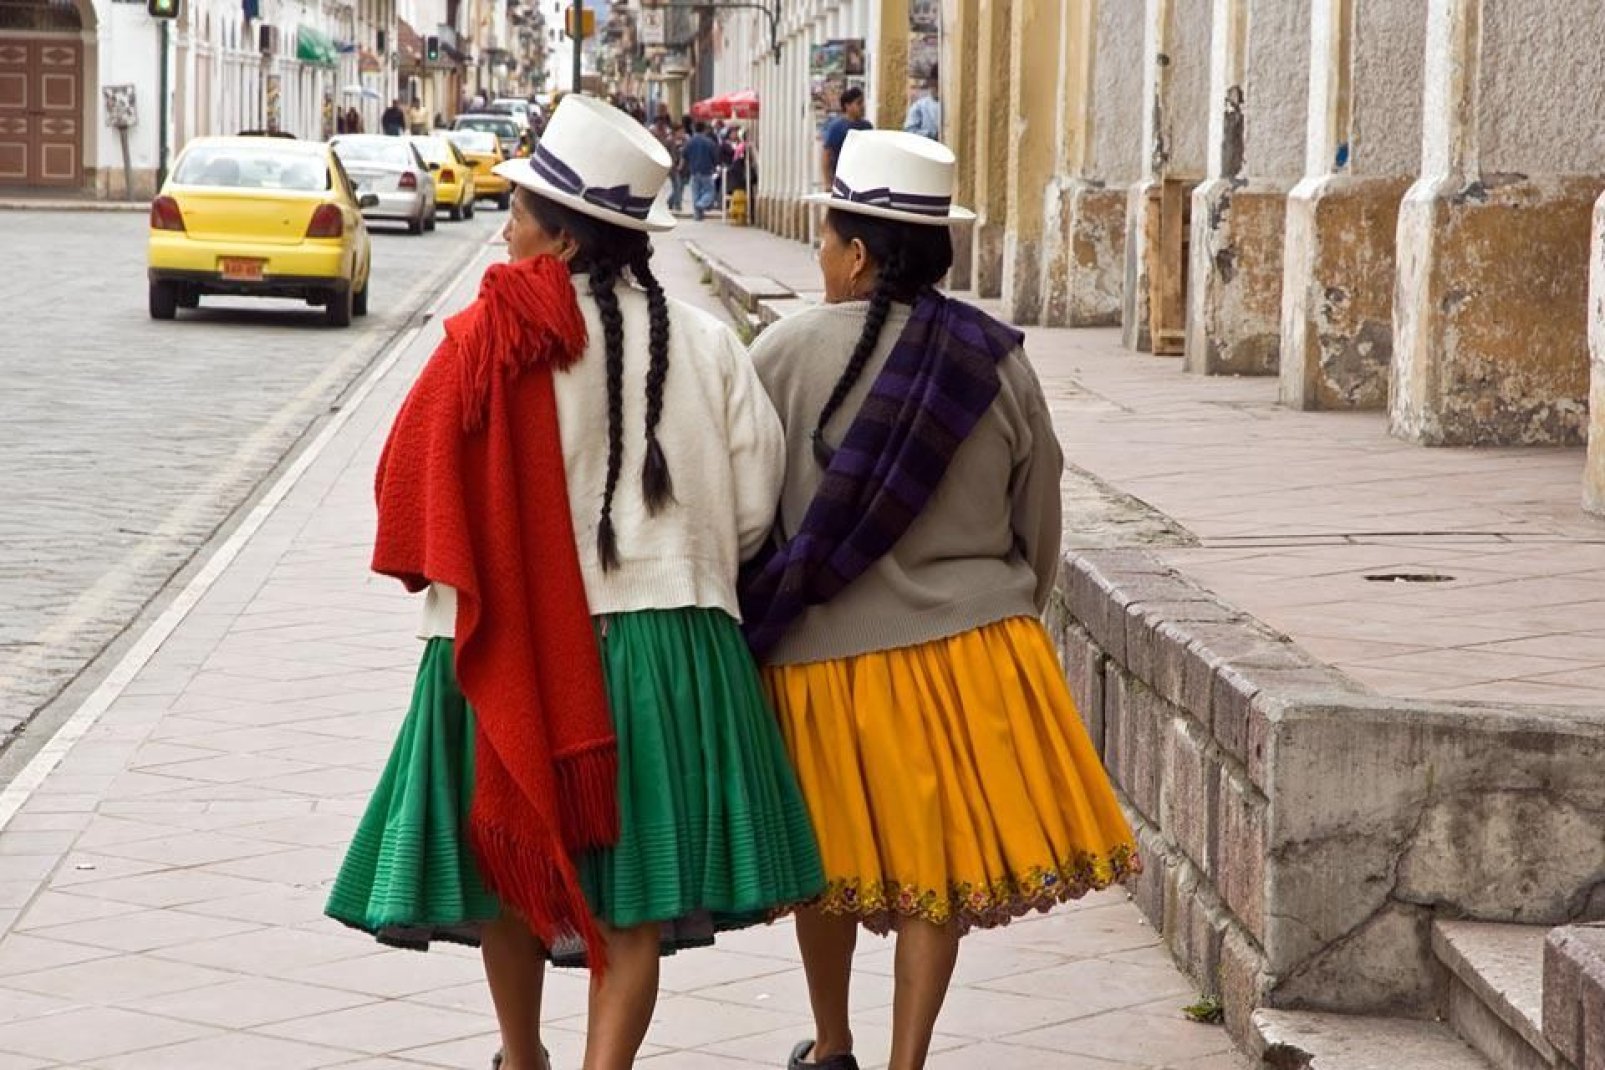 Cuenca wurde wie die Stadt Quito stark von der Kolonialzeit geprgt, was man vor allem am typischen Architekturstil erkennt.